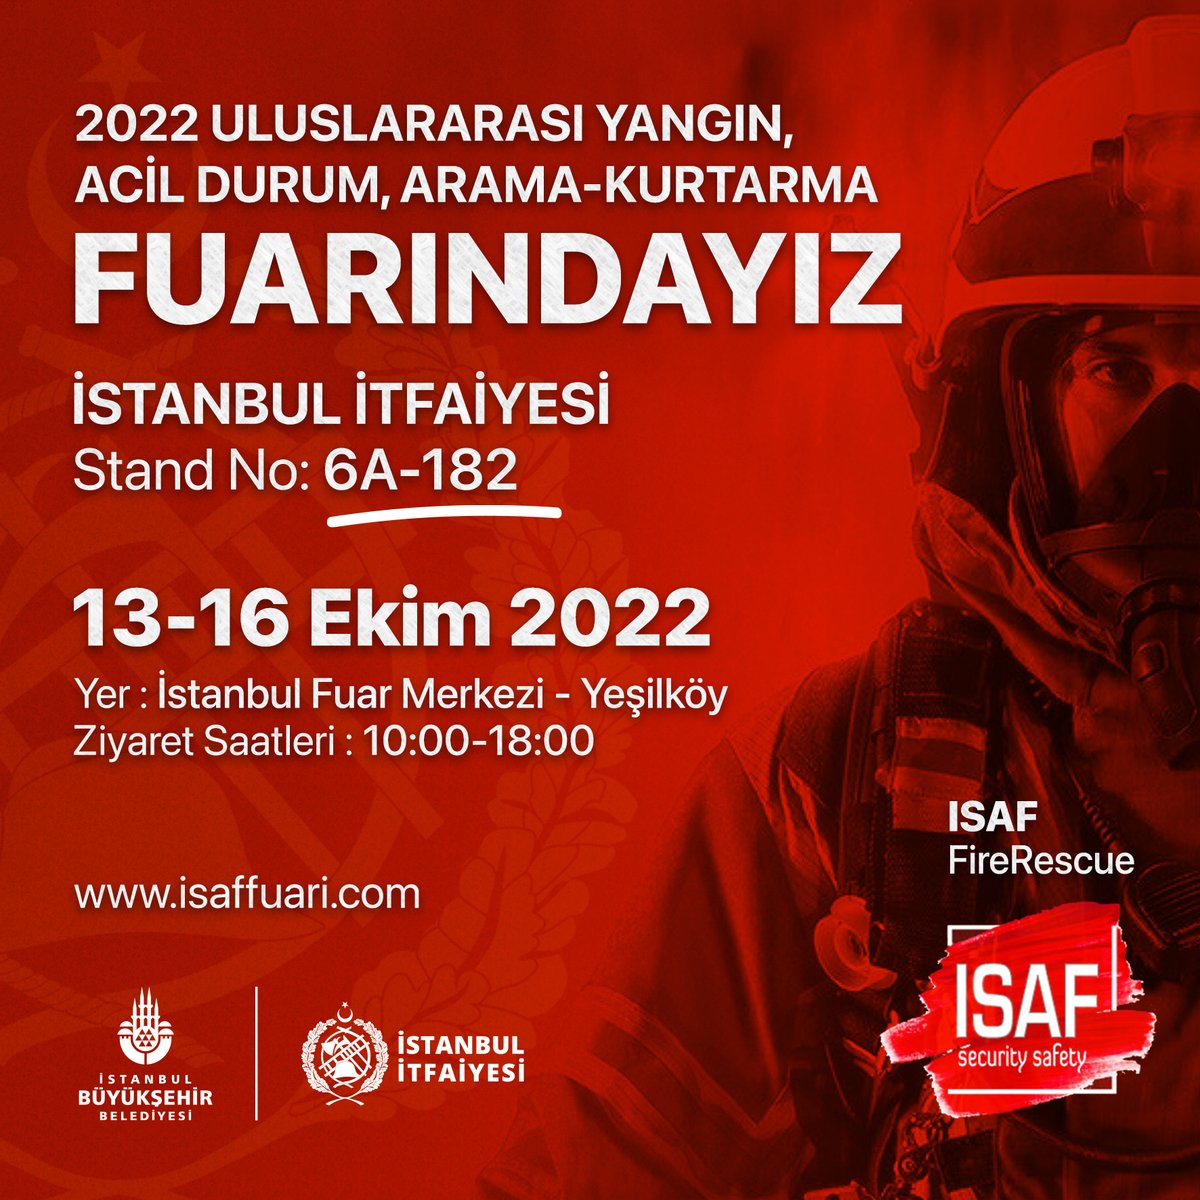 13-16 Ekim tarihleri arasında düzenlenen 2022 Uluslararası Yangın, Acil Durum, Arama-Kurtarma (ISAF) fuarında standımızı ziyaret edebilirsiniz. 📌İstanbul Fuar Merkezi - Yeşilköy